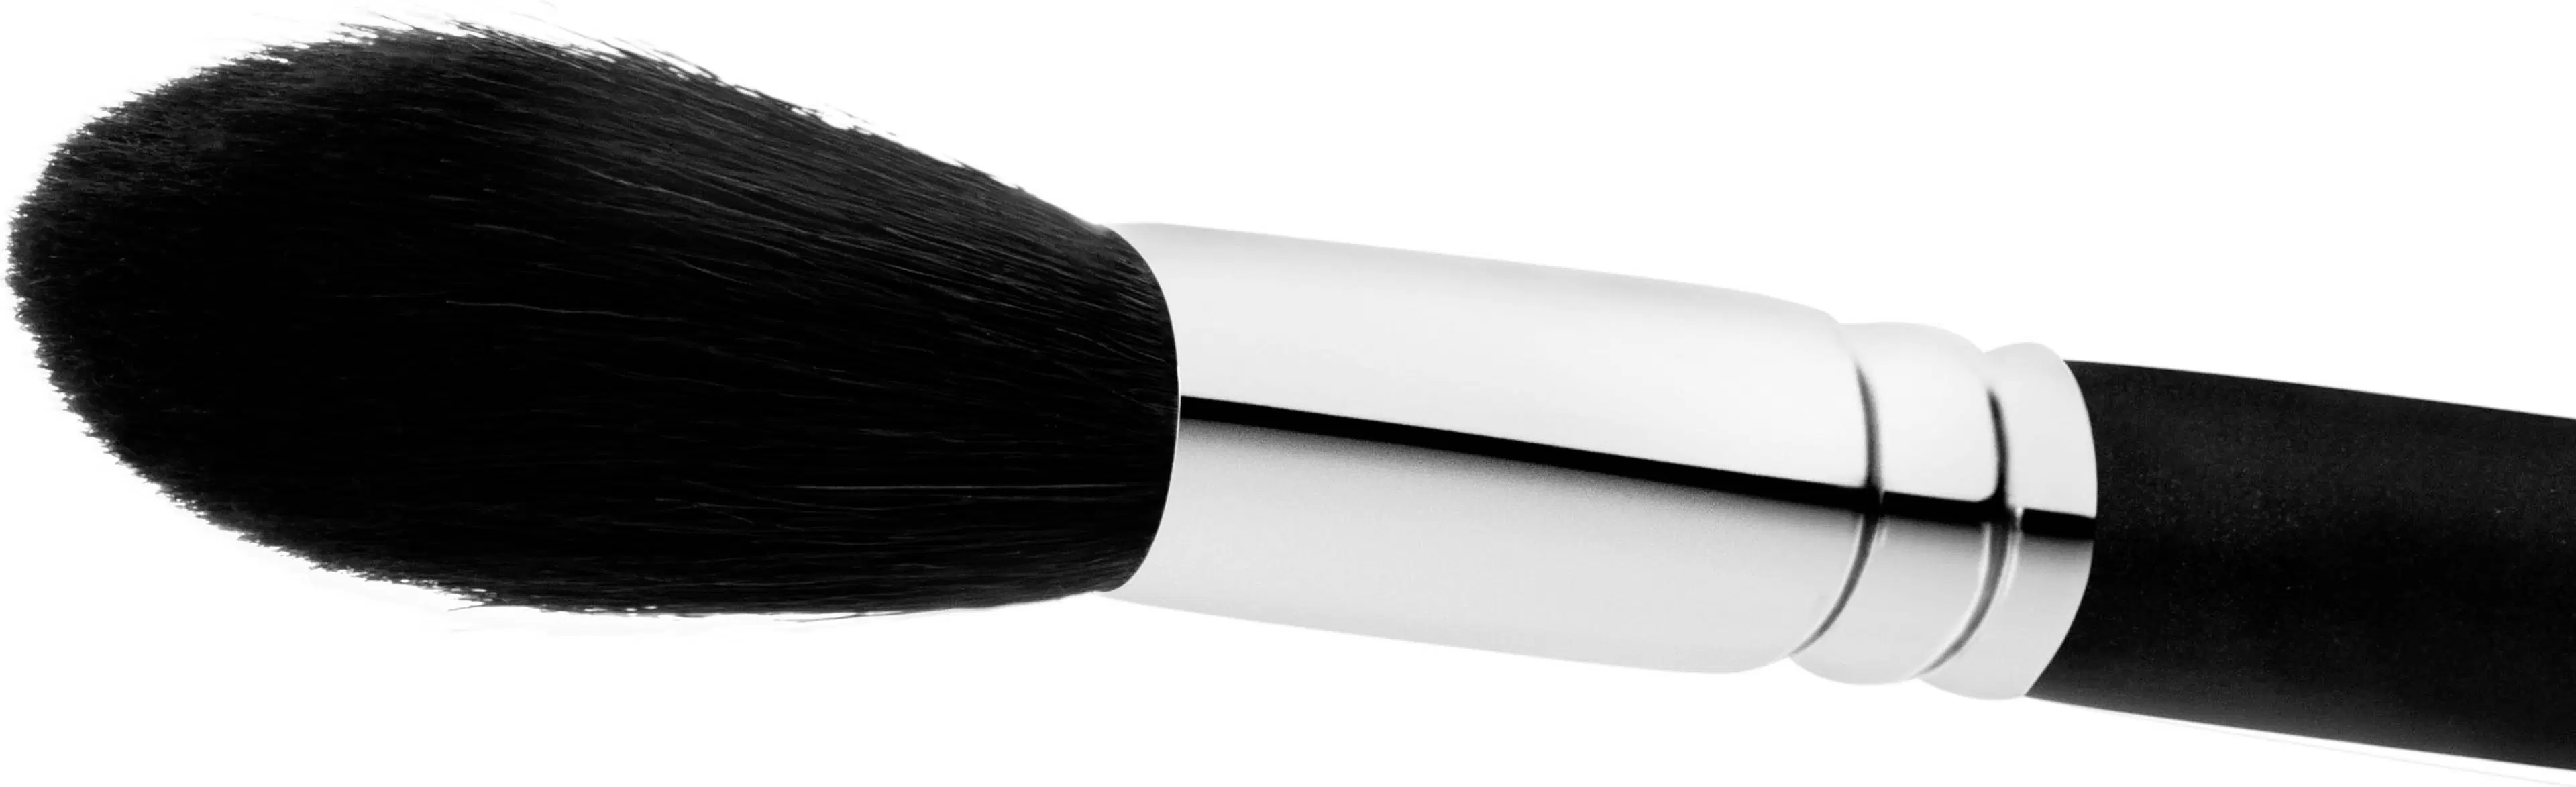 MAC Powder/Blush Brush 129shs sivellin